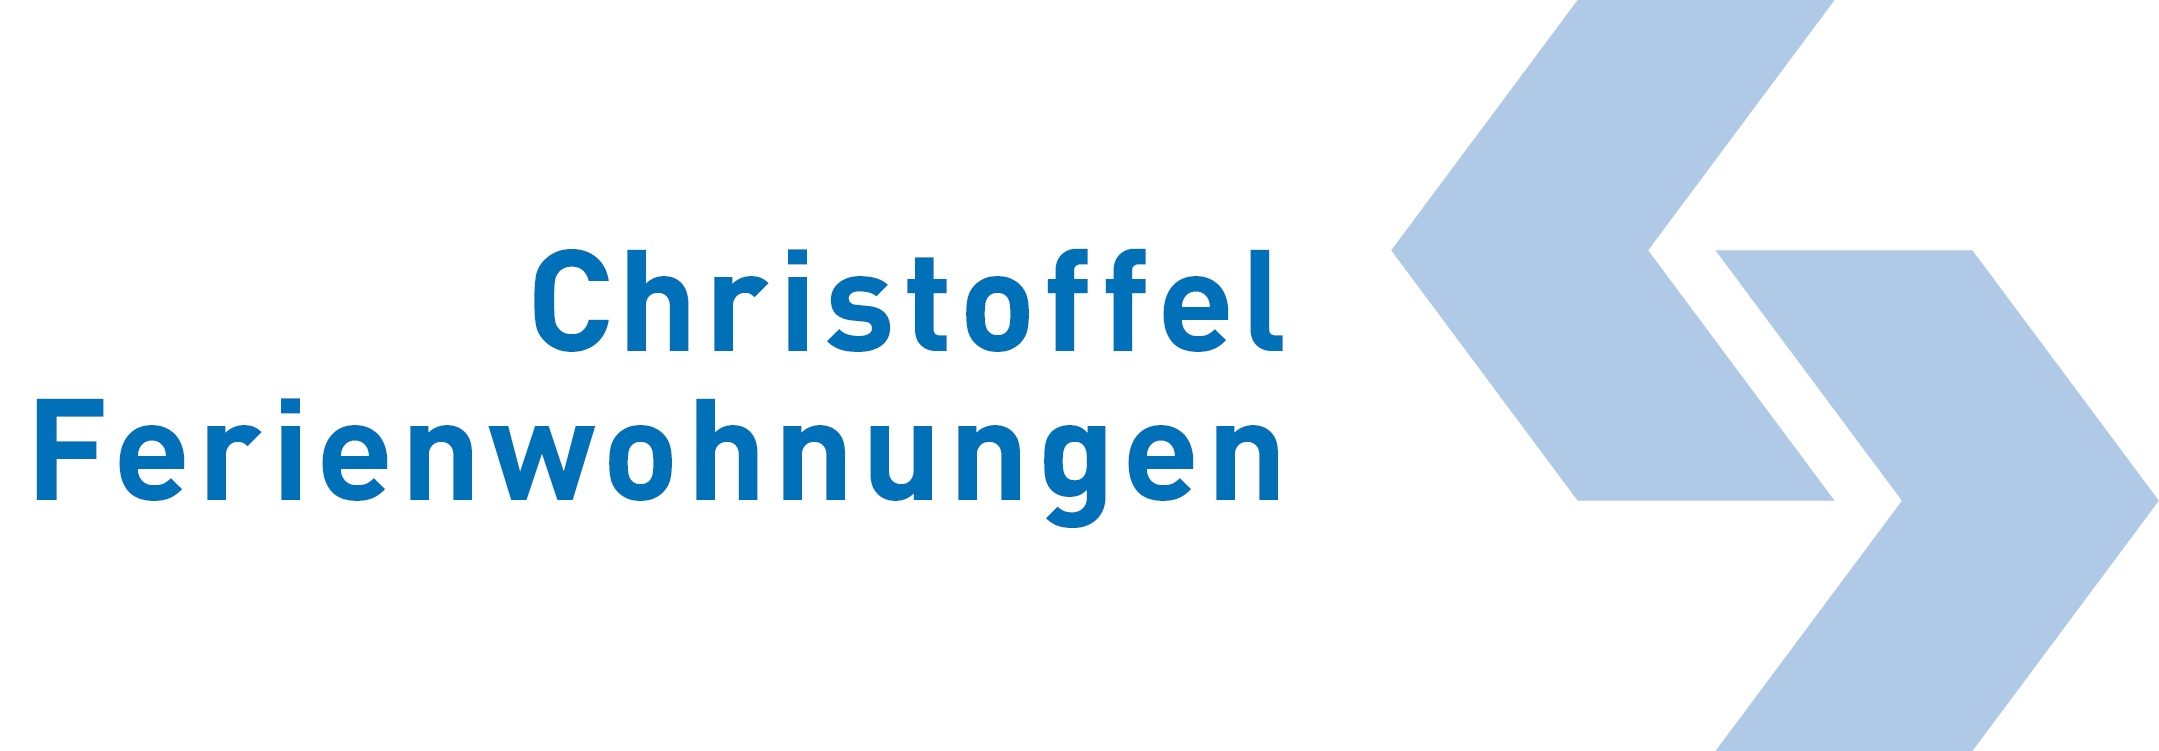 Logo Christoffel Ferienwohungen